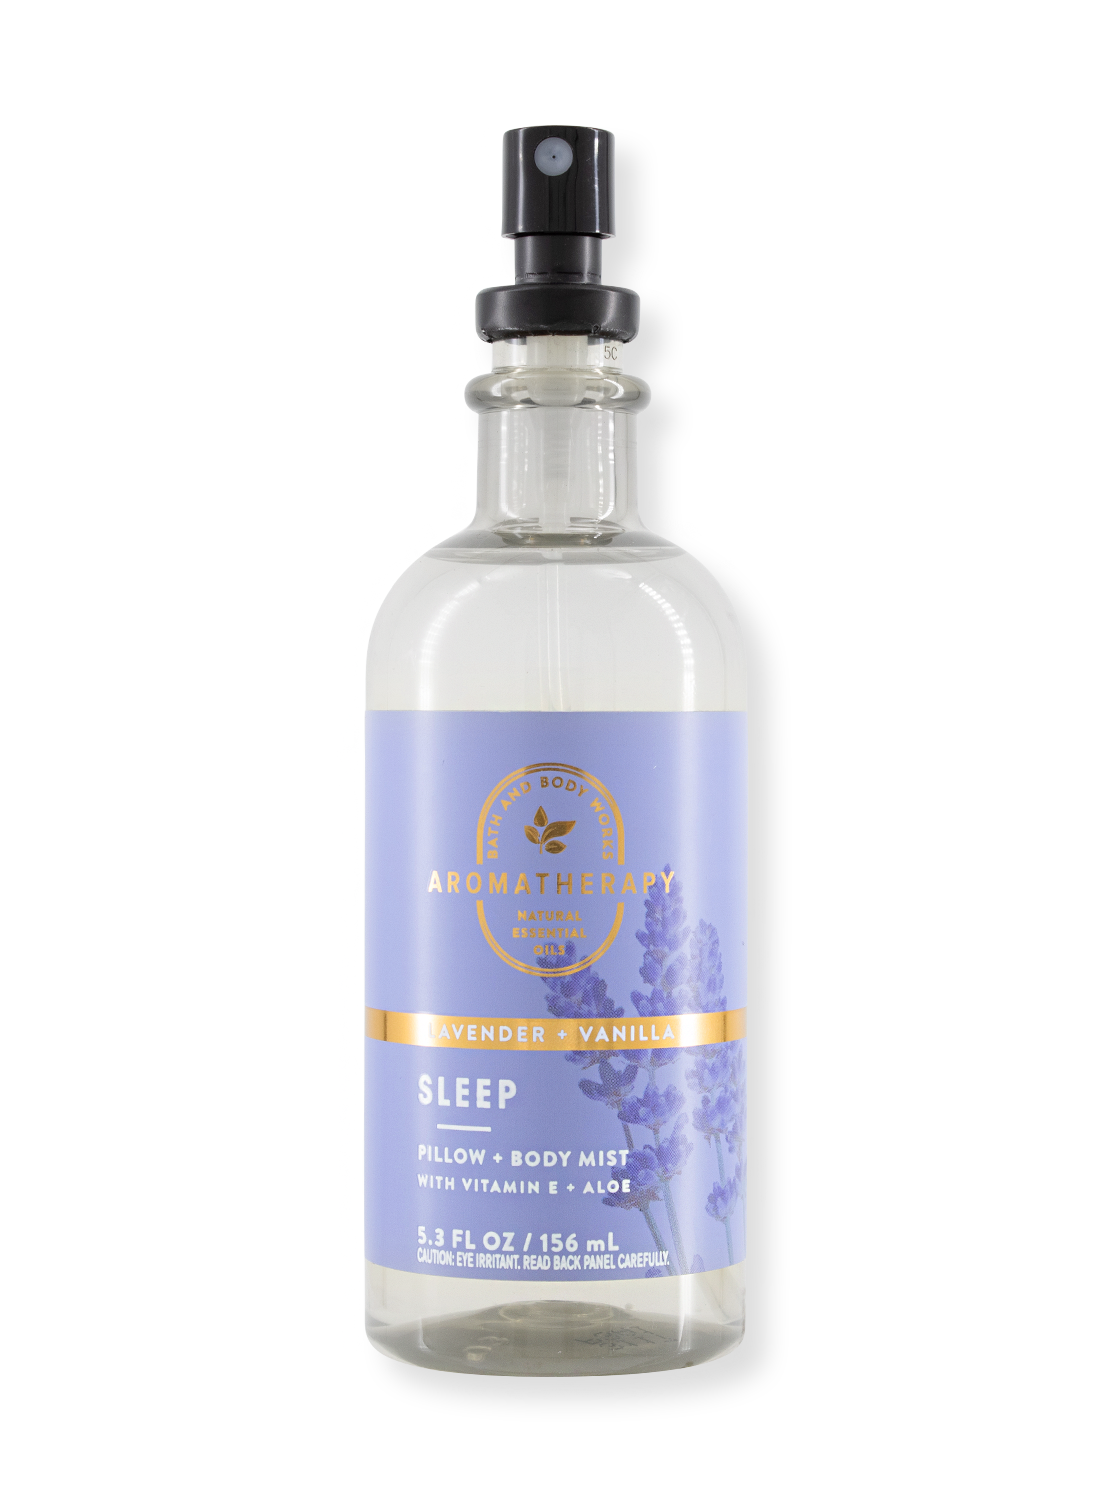 Ätherischer Öl Nebel / Pillow Mist - Aromatherapy - Lavender & Vanilla - 156 ml